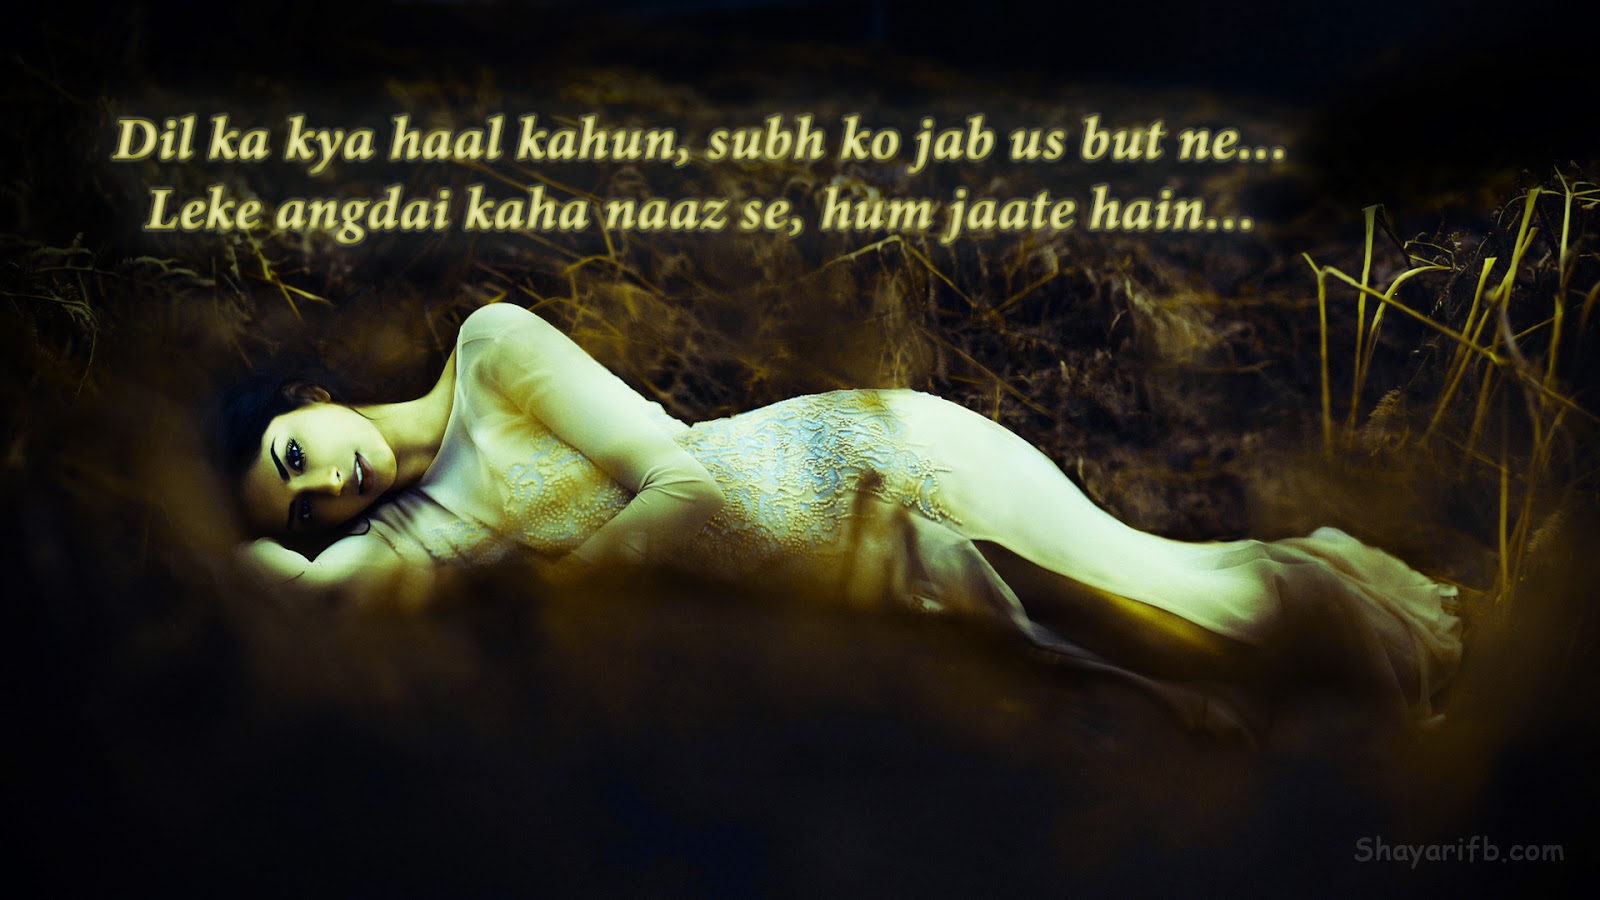 Sad Images | Sad wallpapers | Sad Shayari : Broken heart emotional ...